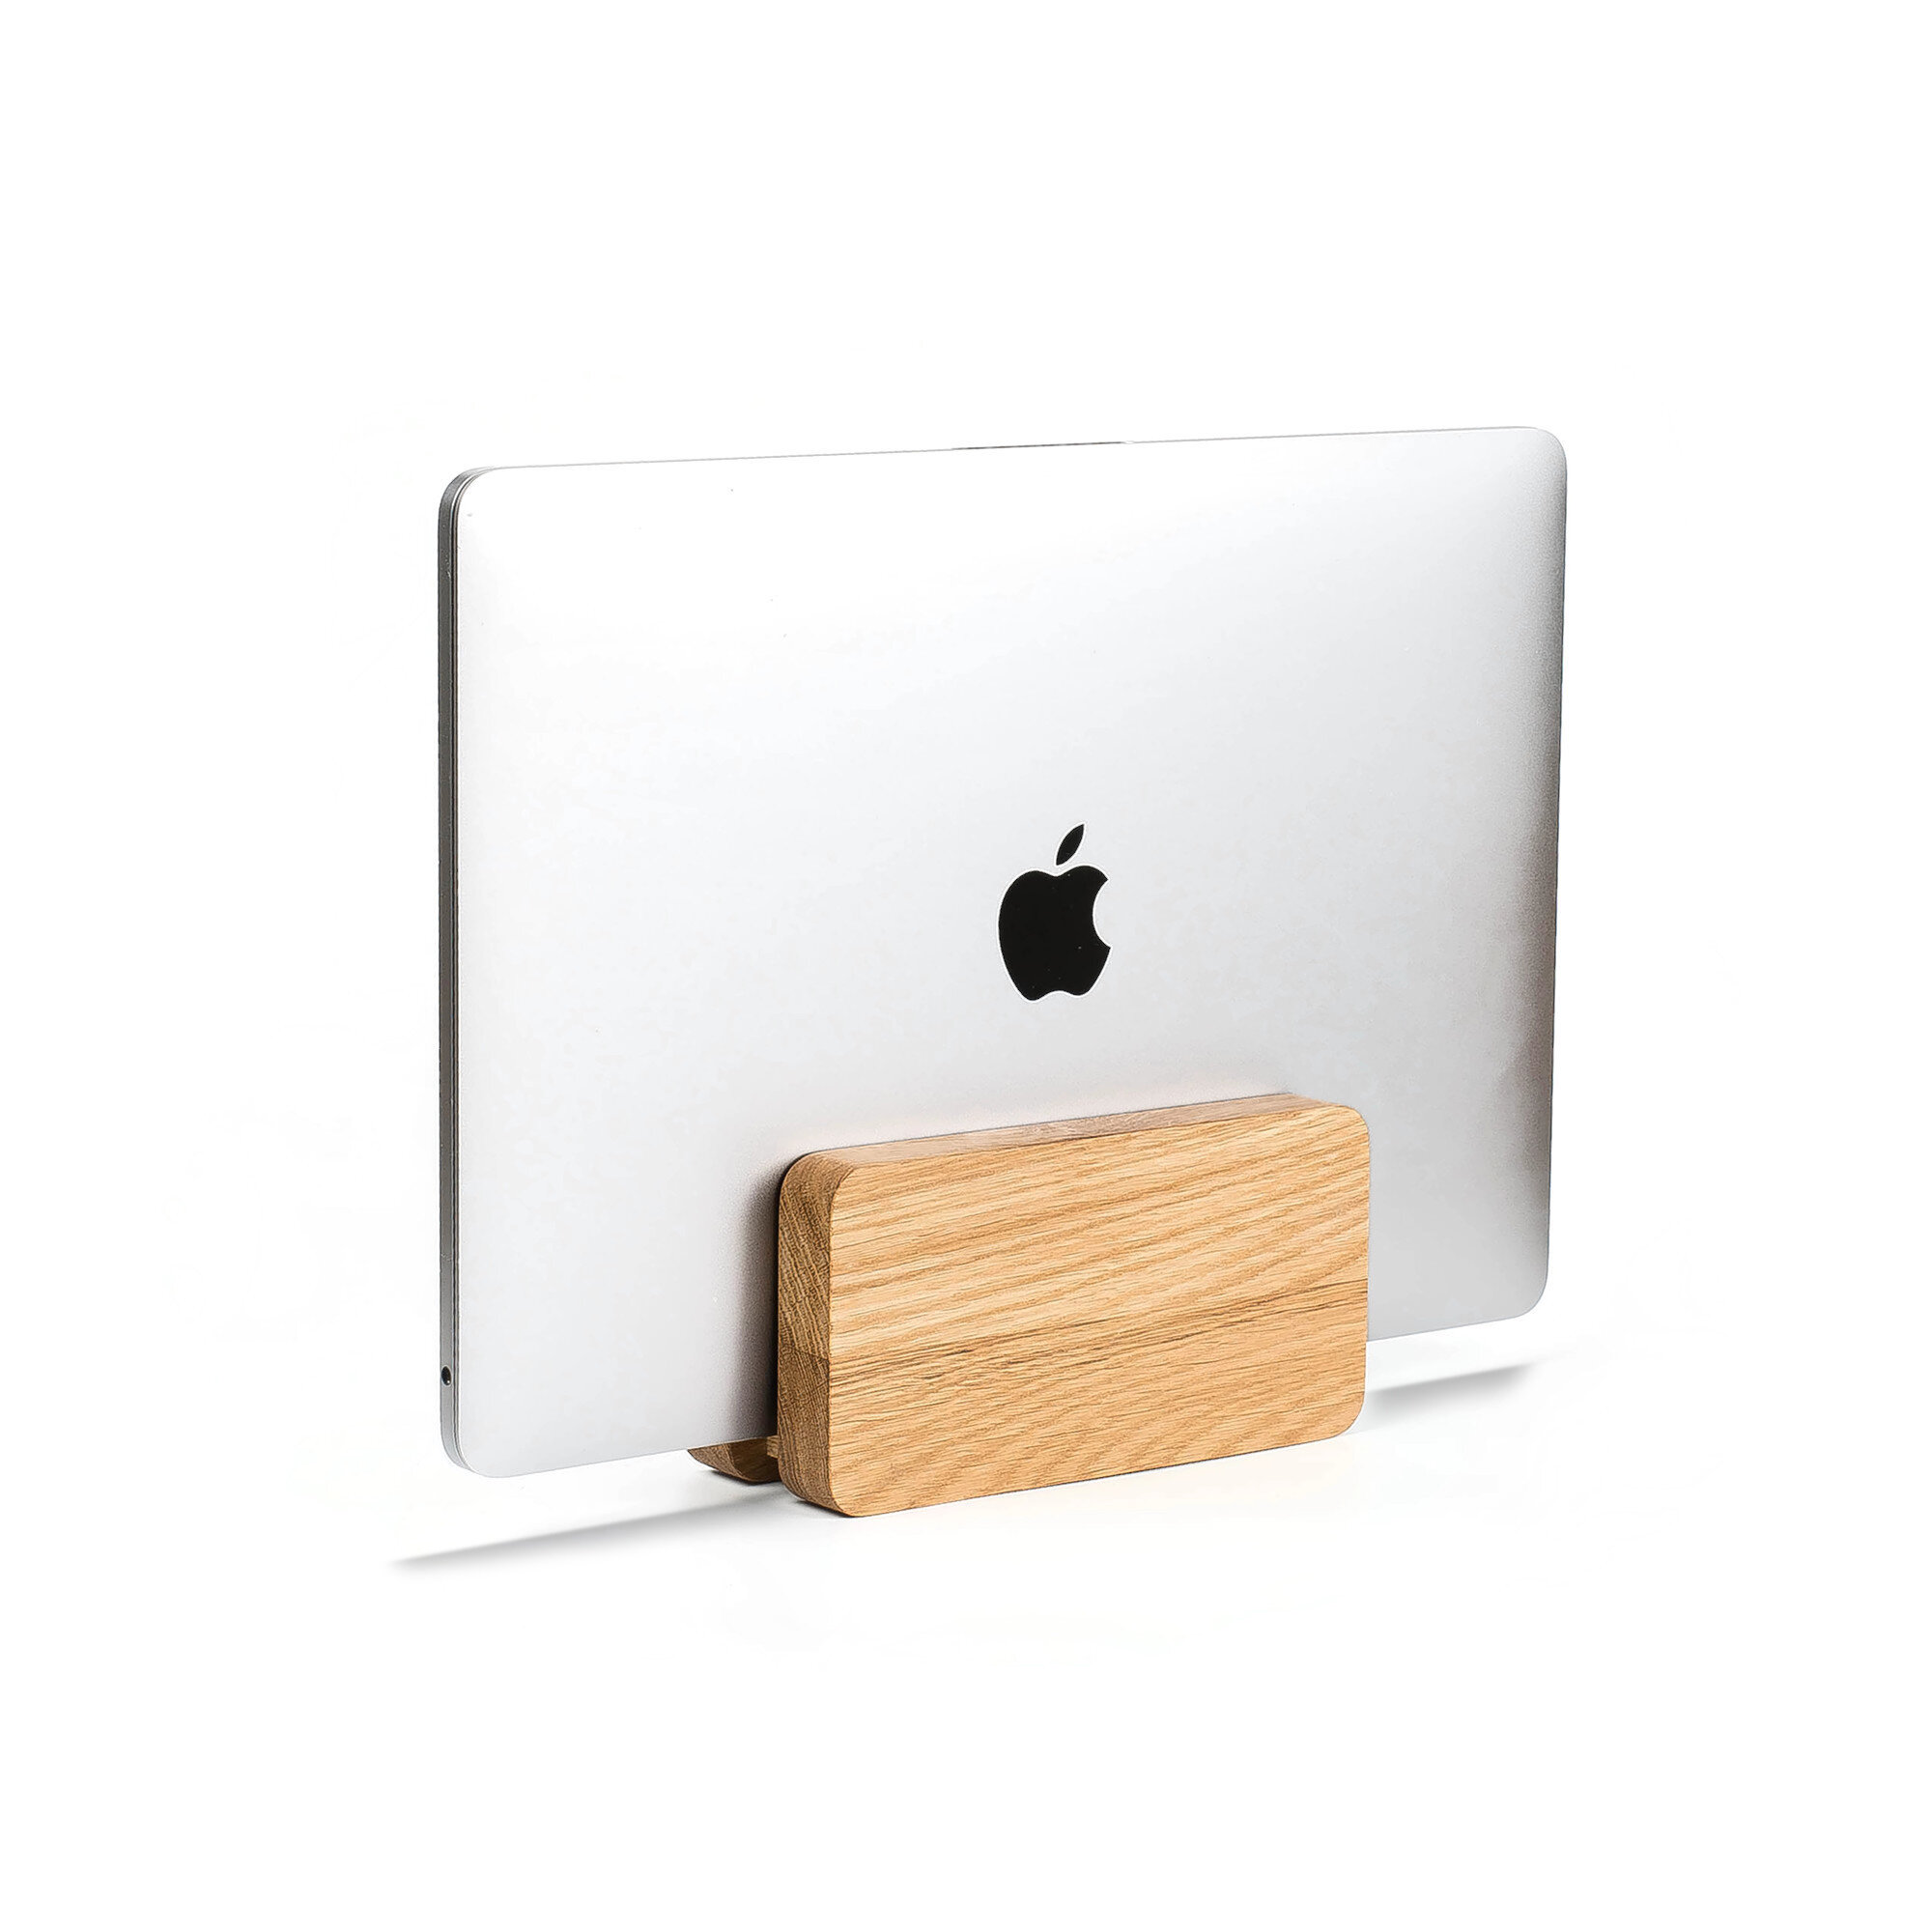 Дизайнерская подставка из дуба подойдет для любого ноутбука толщиной до 20 мм.